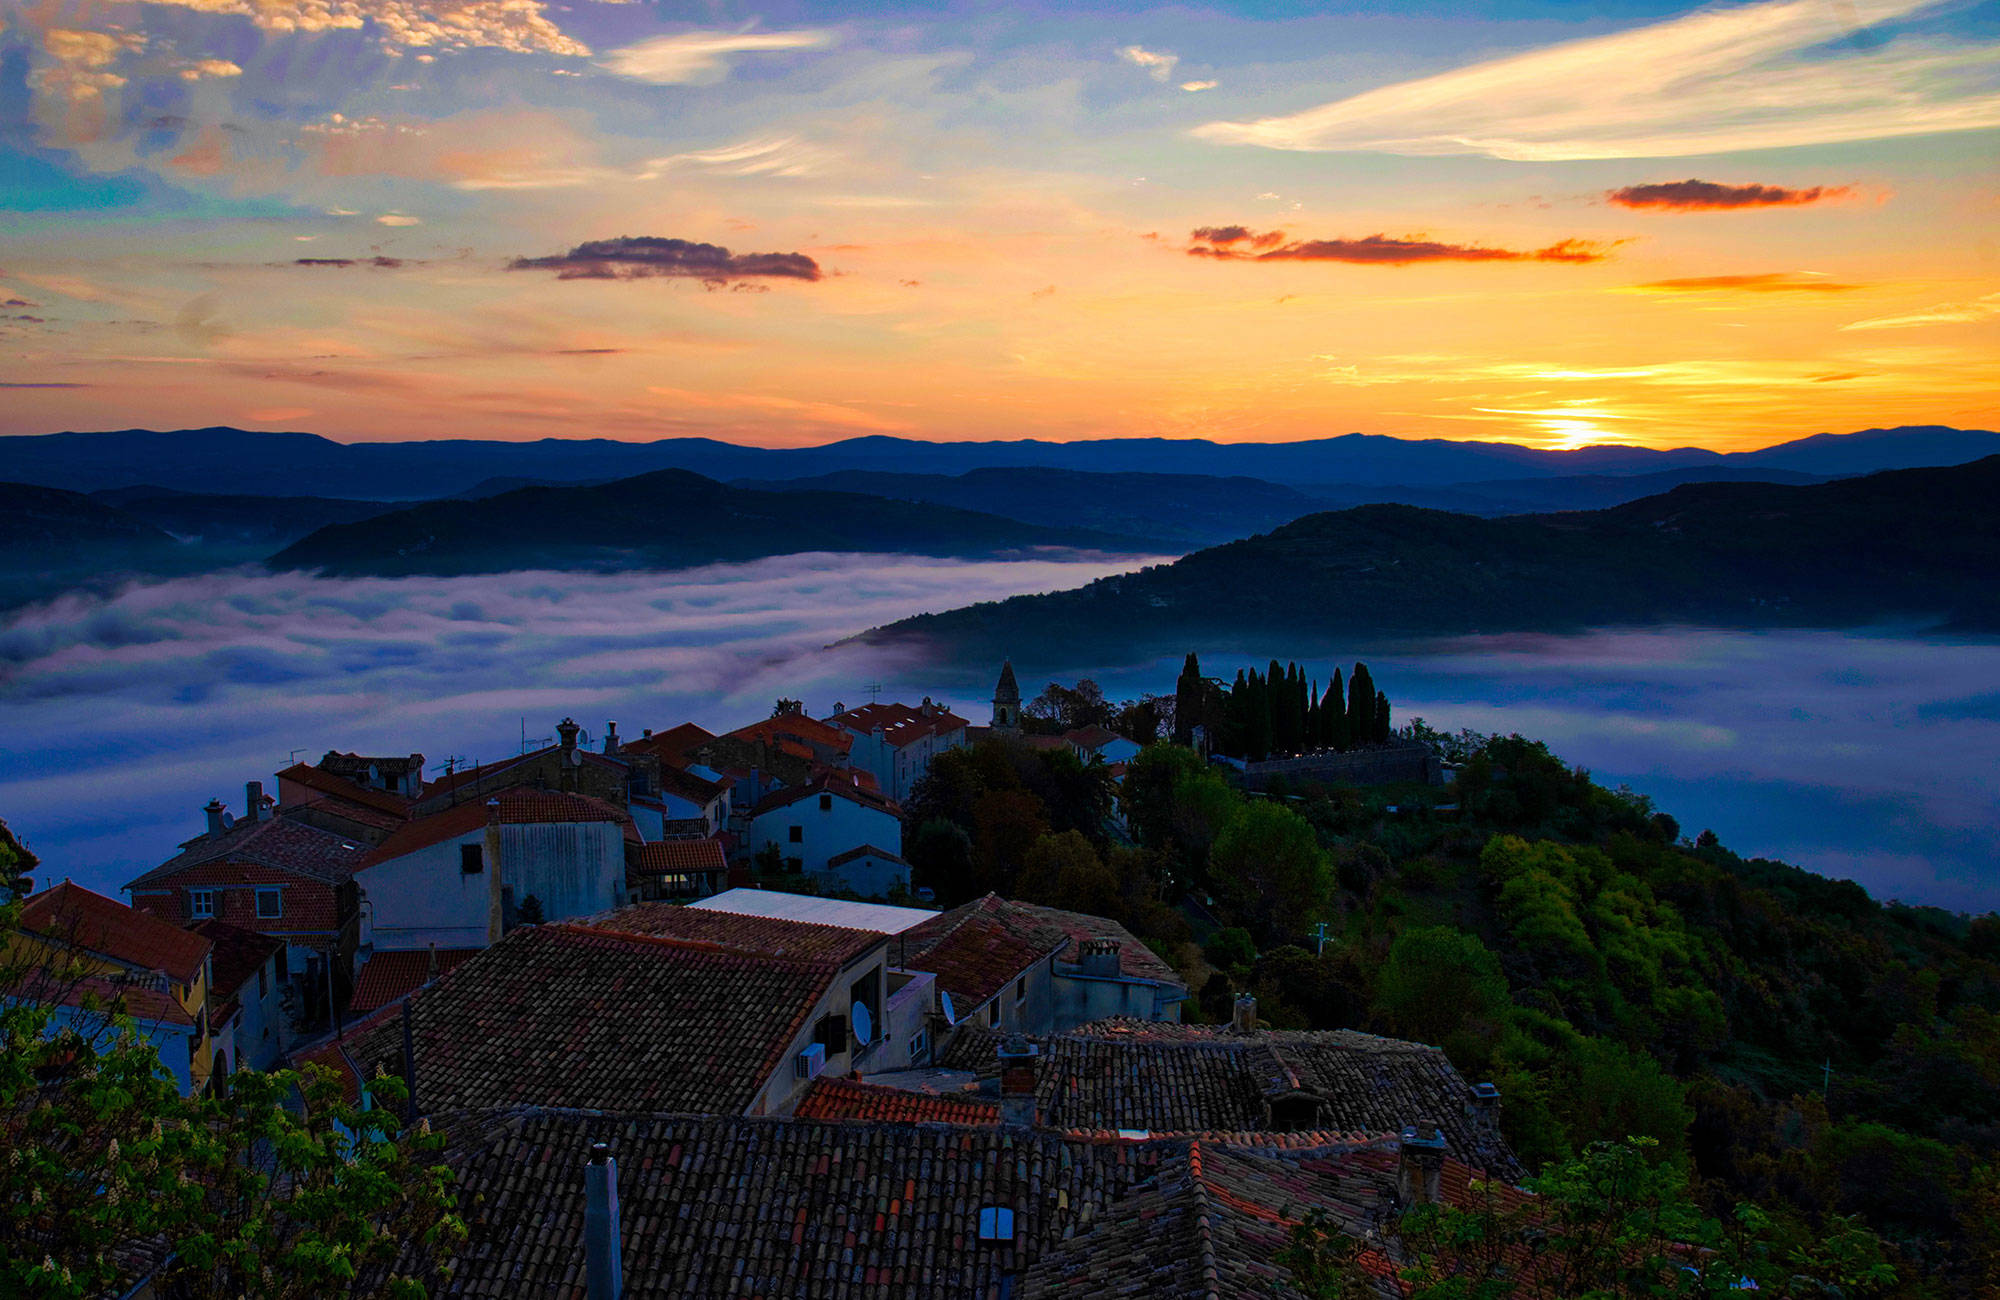 Potovun bij zonsondergang in de mist in Kroatië | Reizen naar de Balkan | KILROY